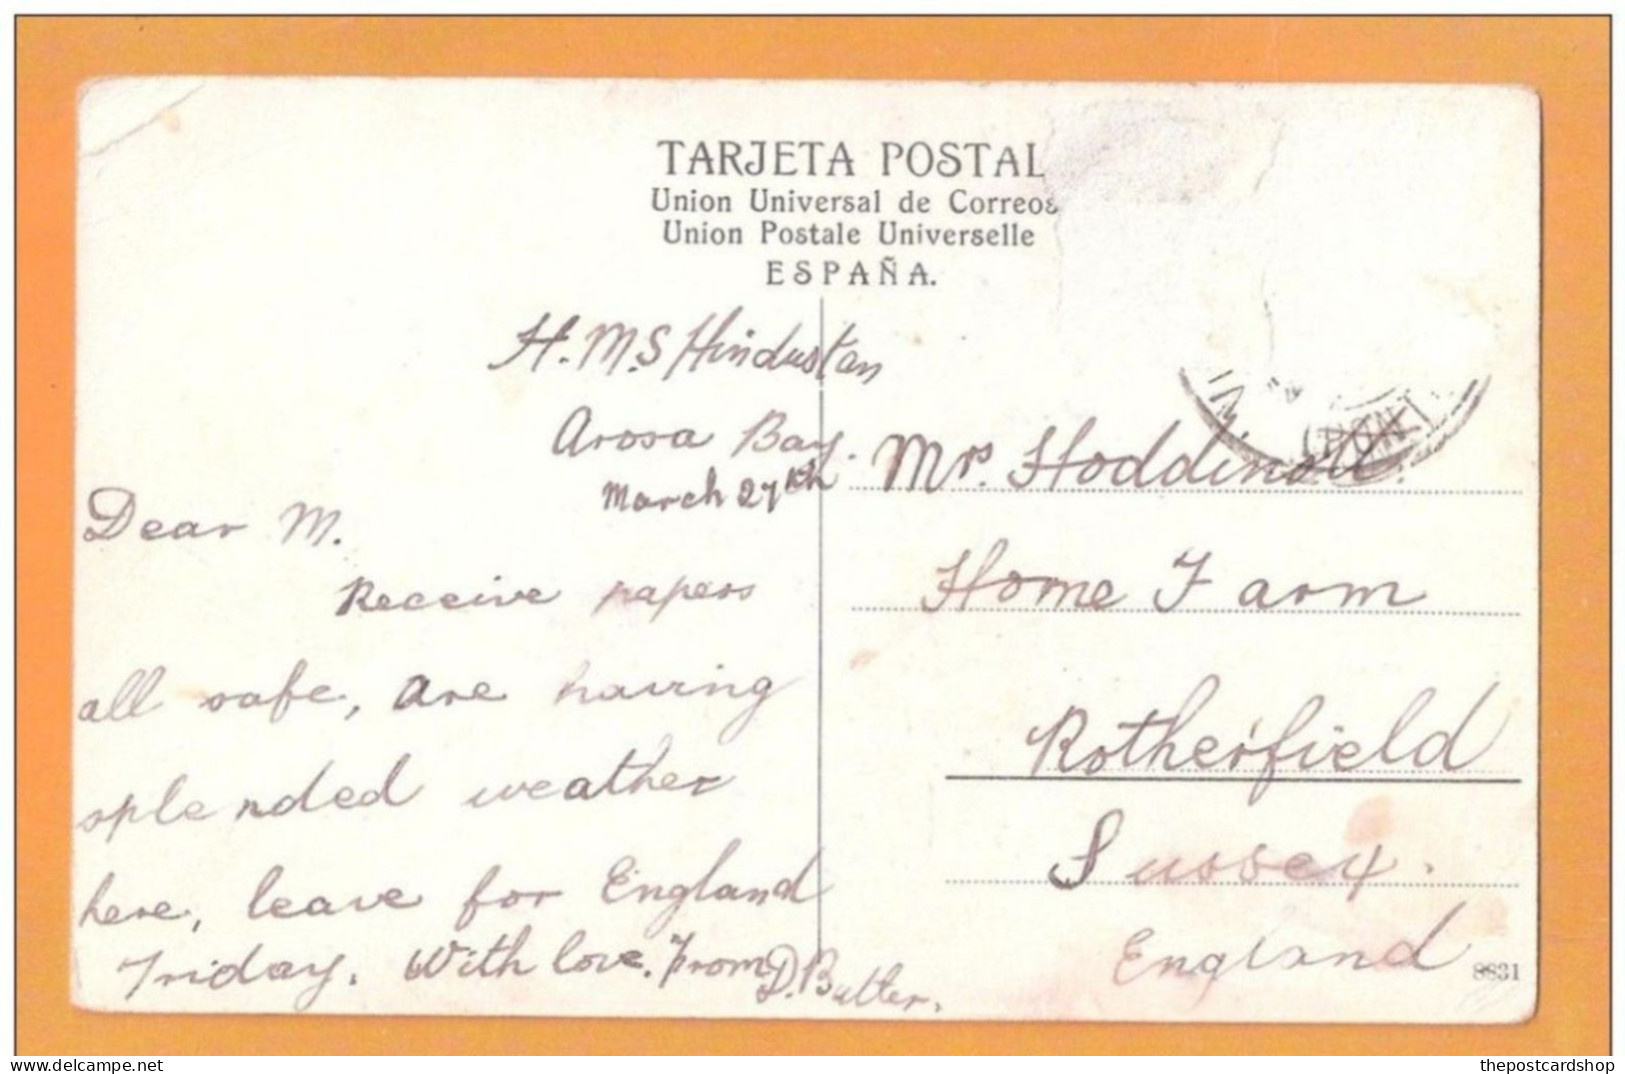 España Spain Galicia Isla De Cortegada Tarjeta Postal - Vintage 1910 Postcard USED 1910 Hms Hinduston - Pontevedra